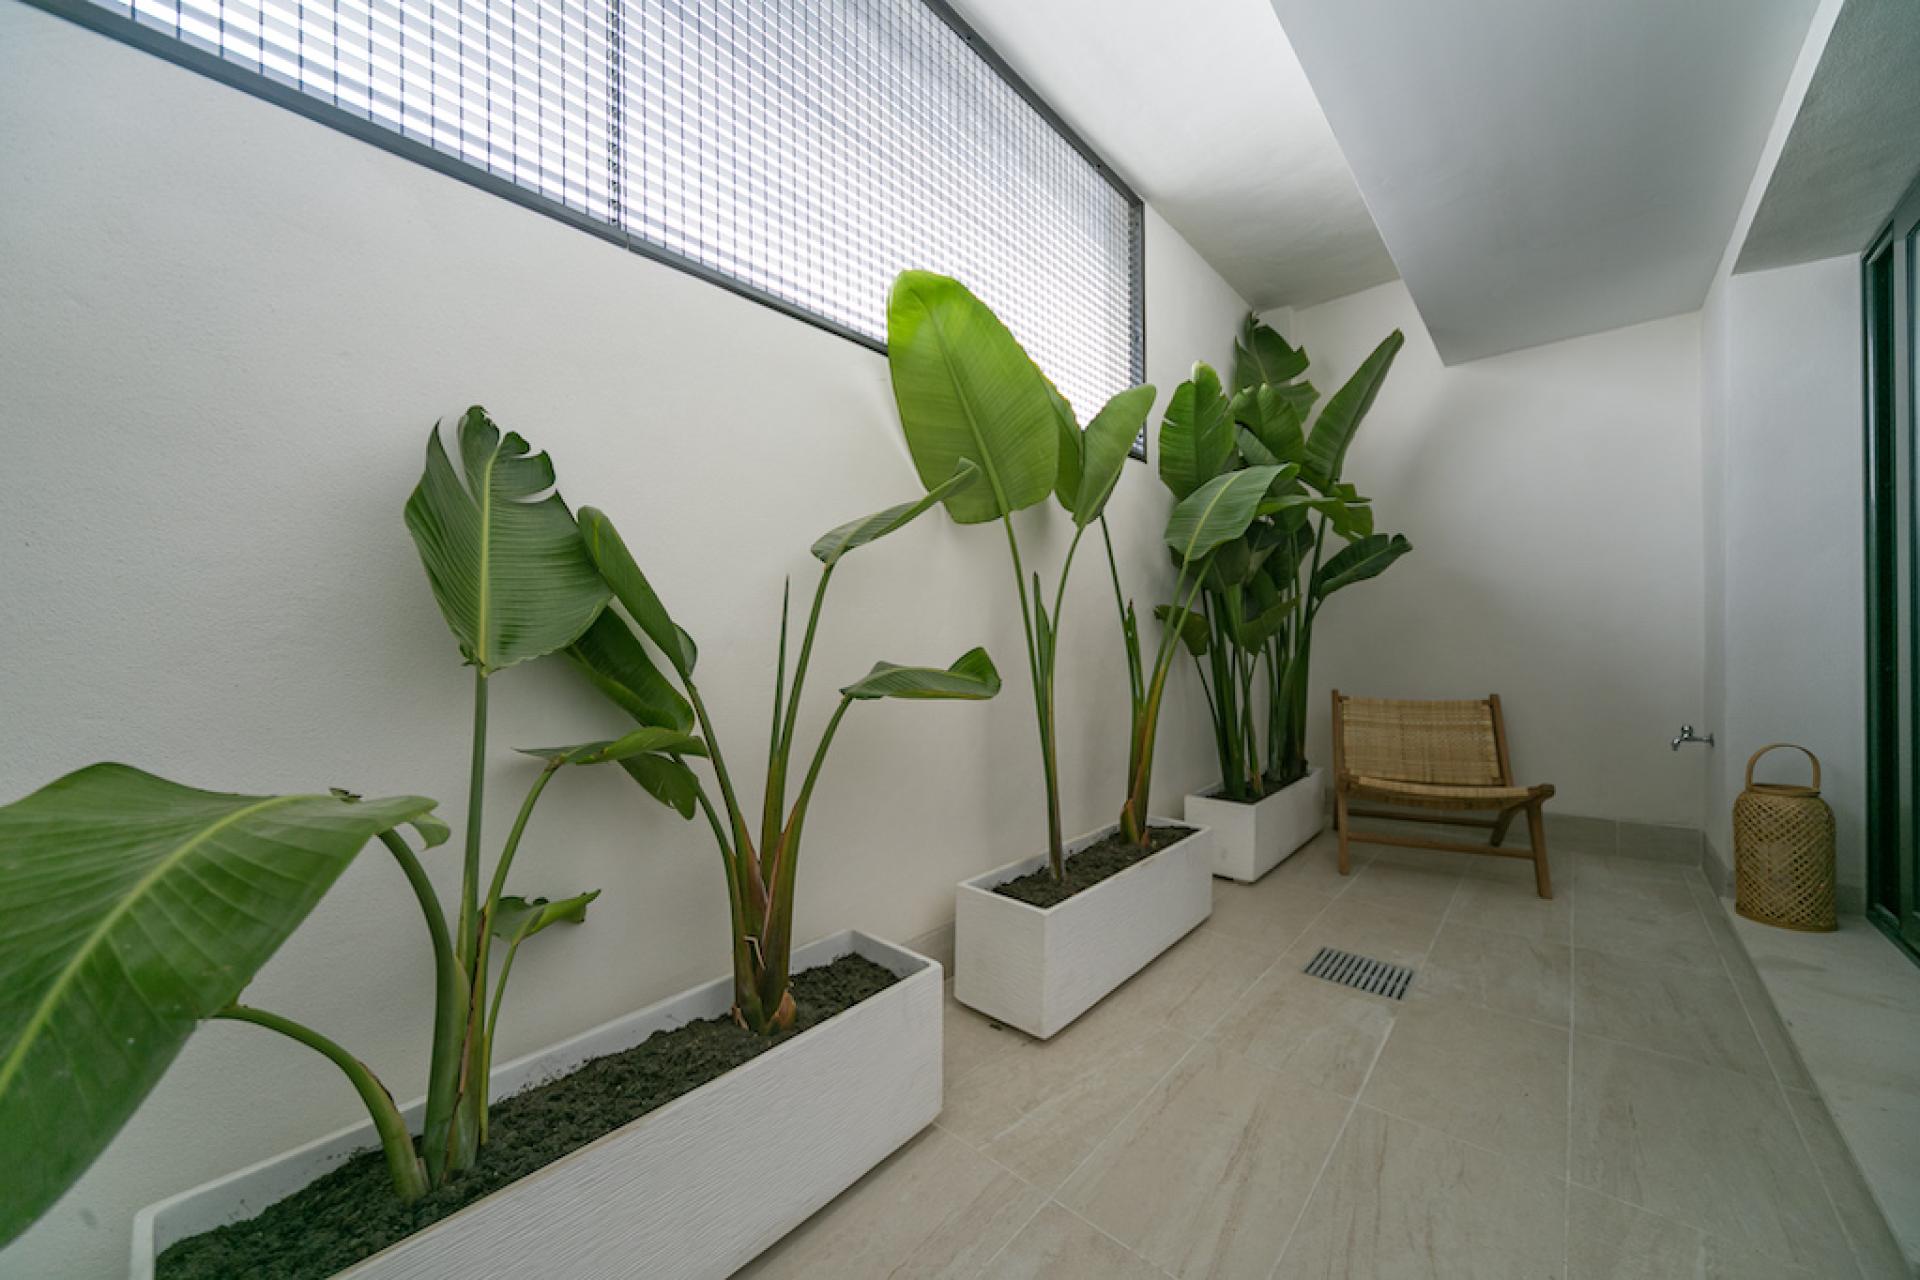 2 slaapkamer Appartement met tuin in Torrevieja - Nieuwbouw in Medvilla Spanje